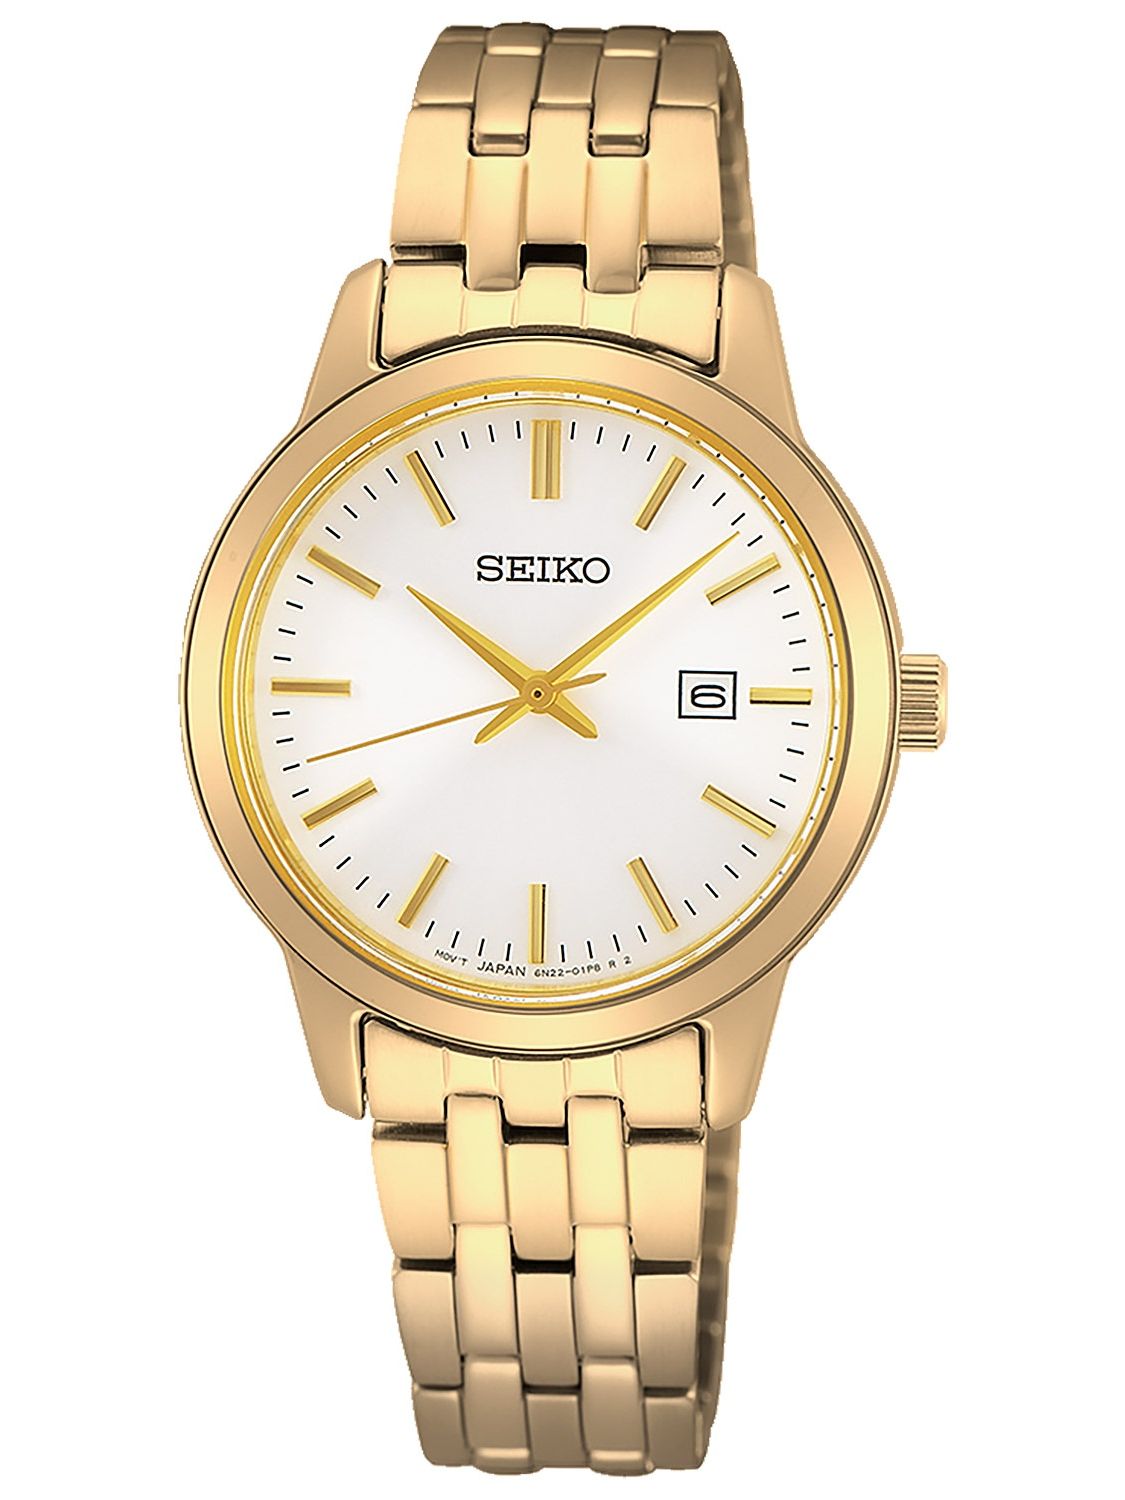 Seiko Gold Watches | danielaboltres.de